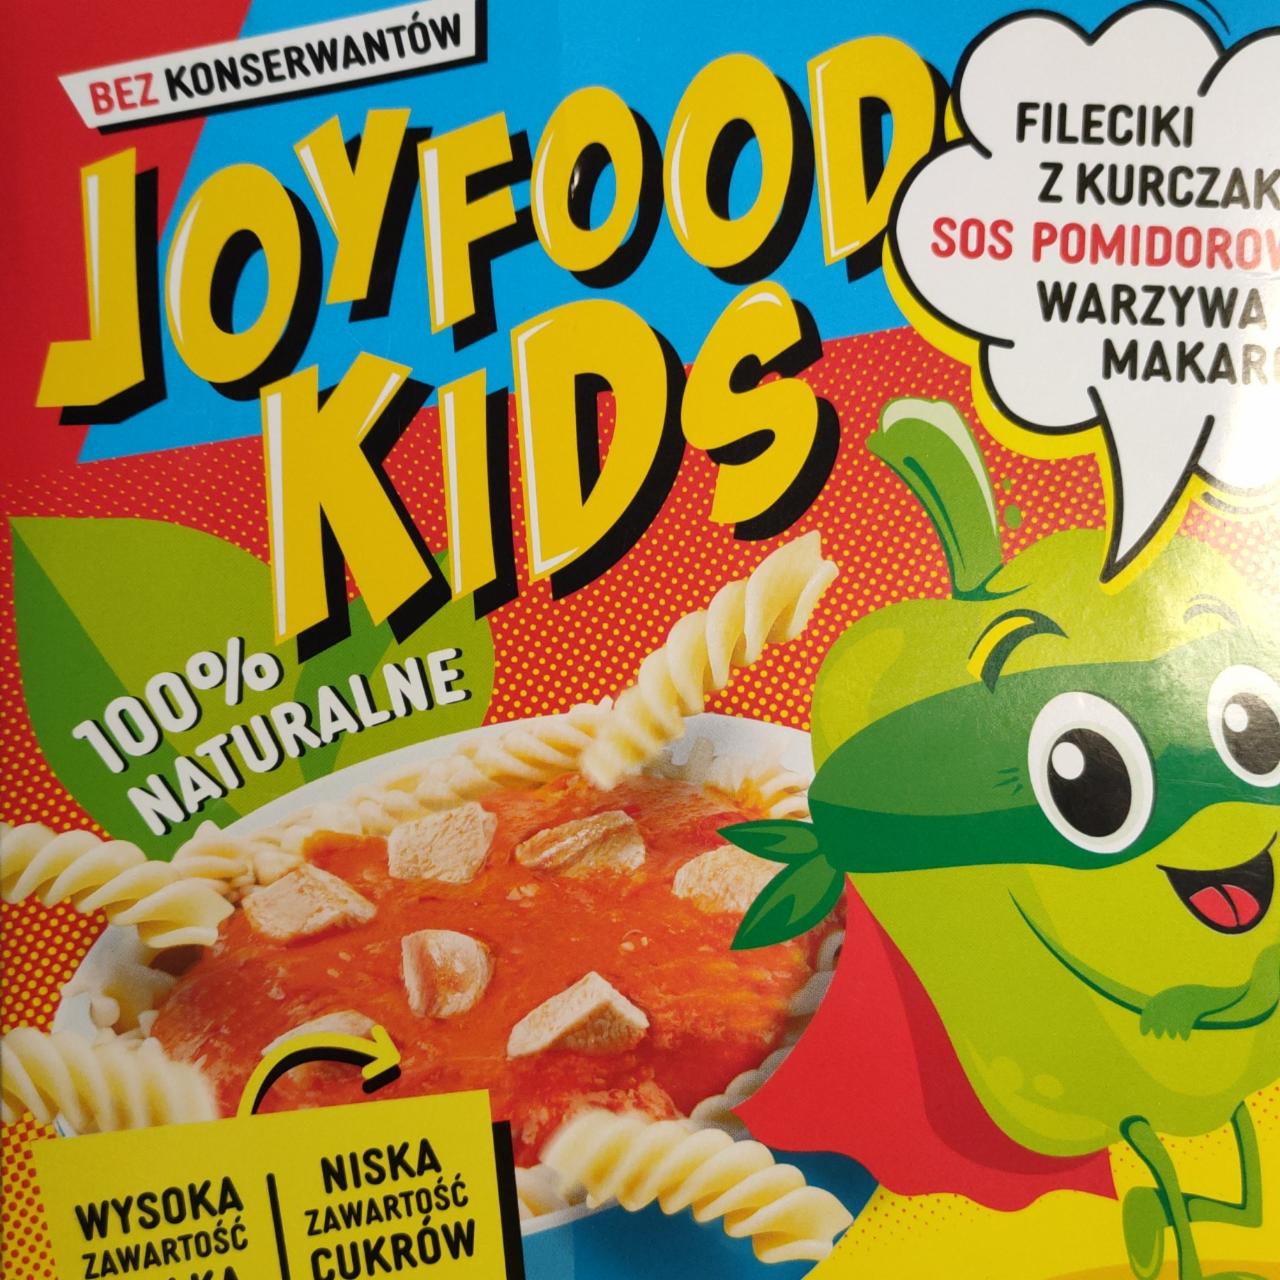 Zdjęcia - Fileciki z kurczaka sos pomidorowy warzywa makaron JoyFood Kids